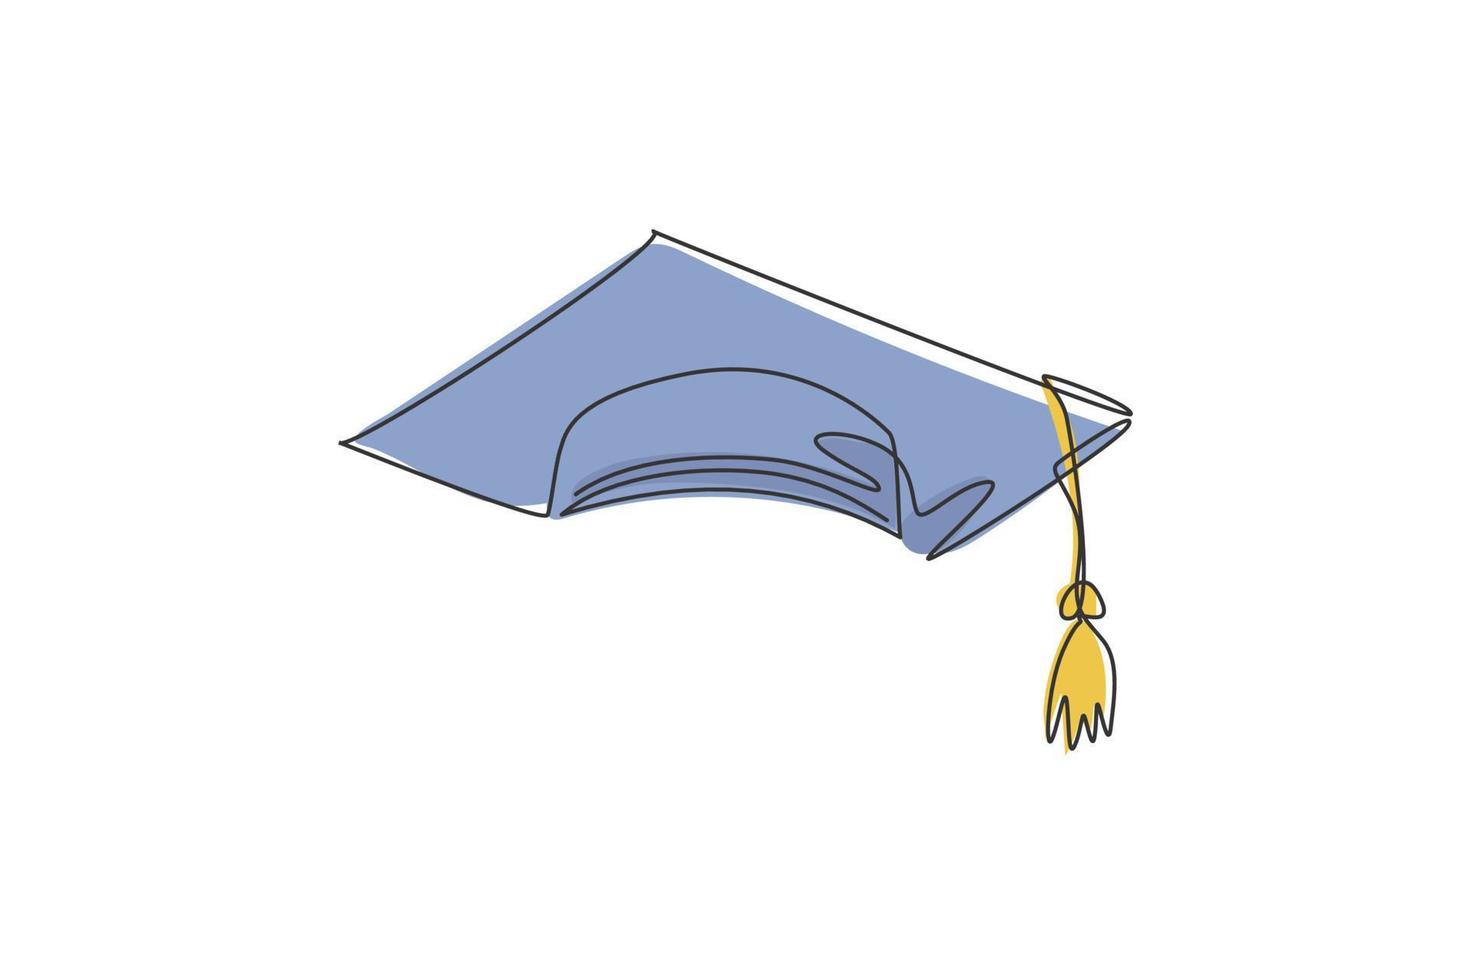 gorro de graduación. Icono gráfico de sombrero de graduación universitaria de línea continua única. Doodle simple de una línea para el concepto de educación. diseño minimalista de la ilustración del vector aislado en el fondo blanco